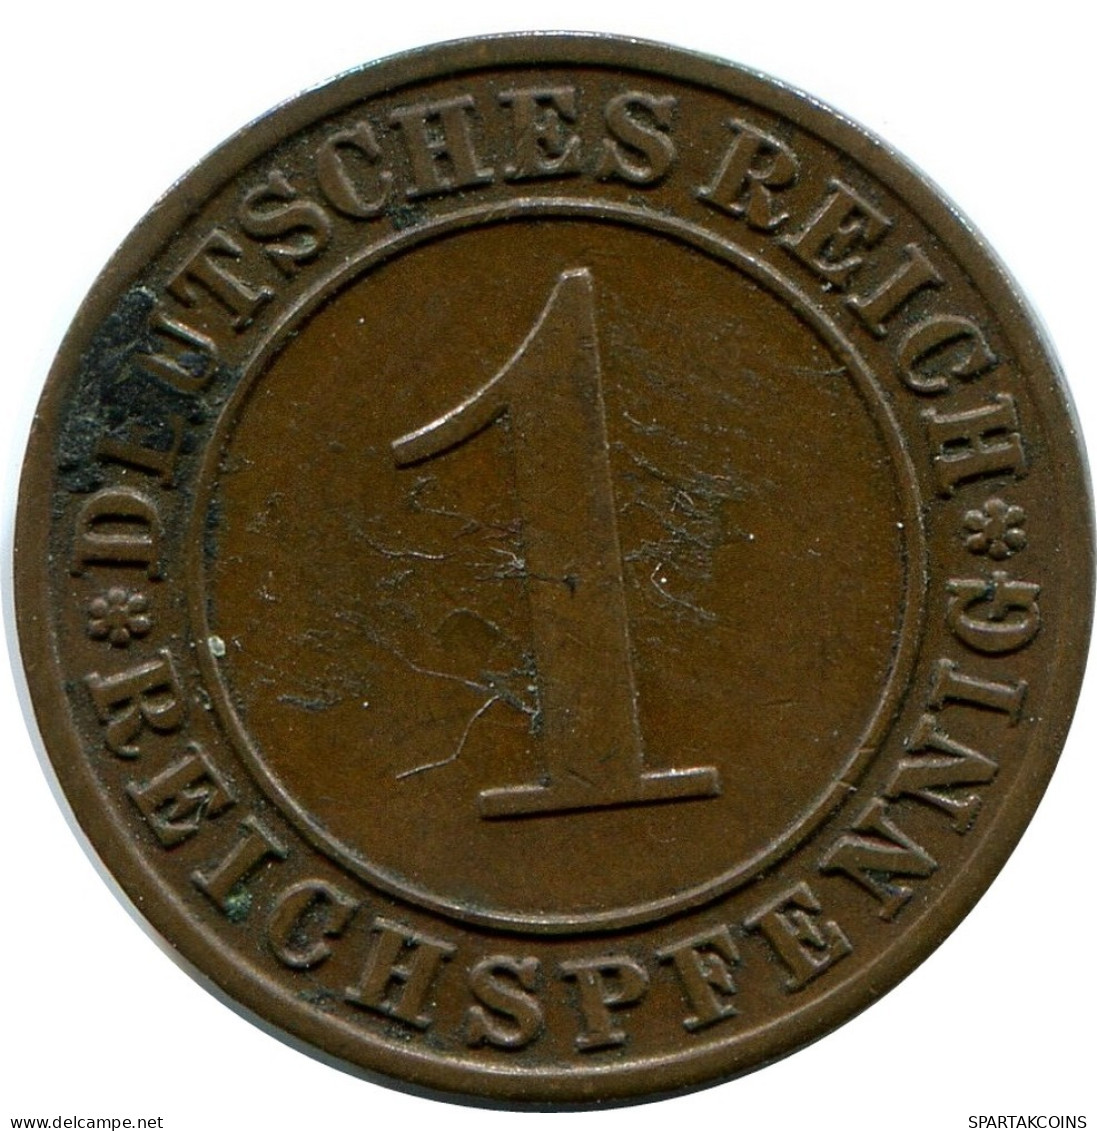 1 REICHSPFENNIG 1929 A GERMANY Coin #DB783.U.A - 1 Renten- & 1 Reichspfennig